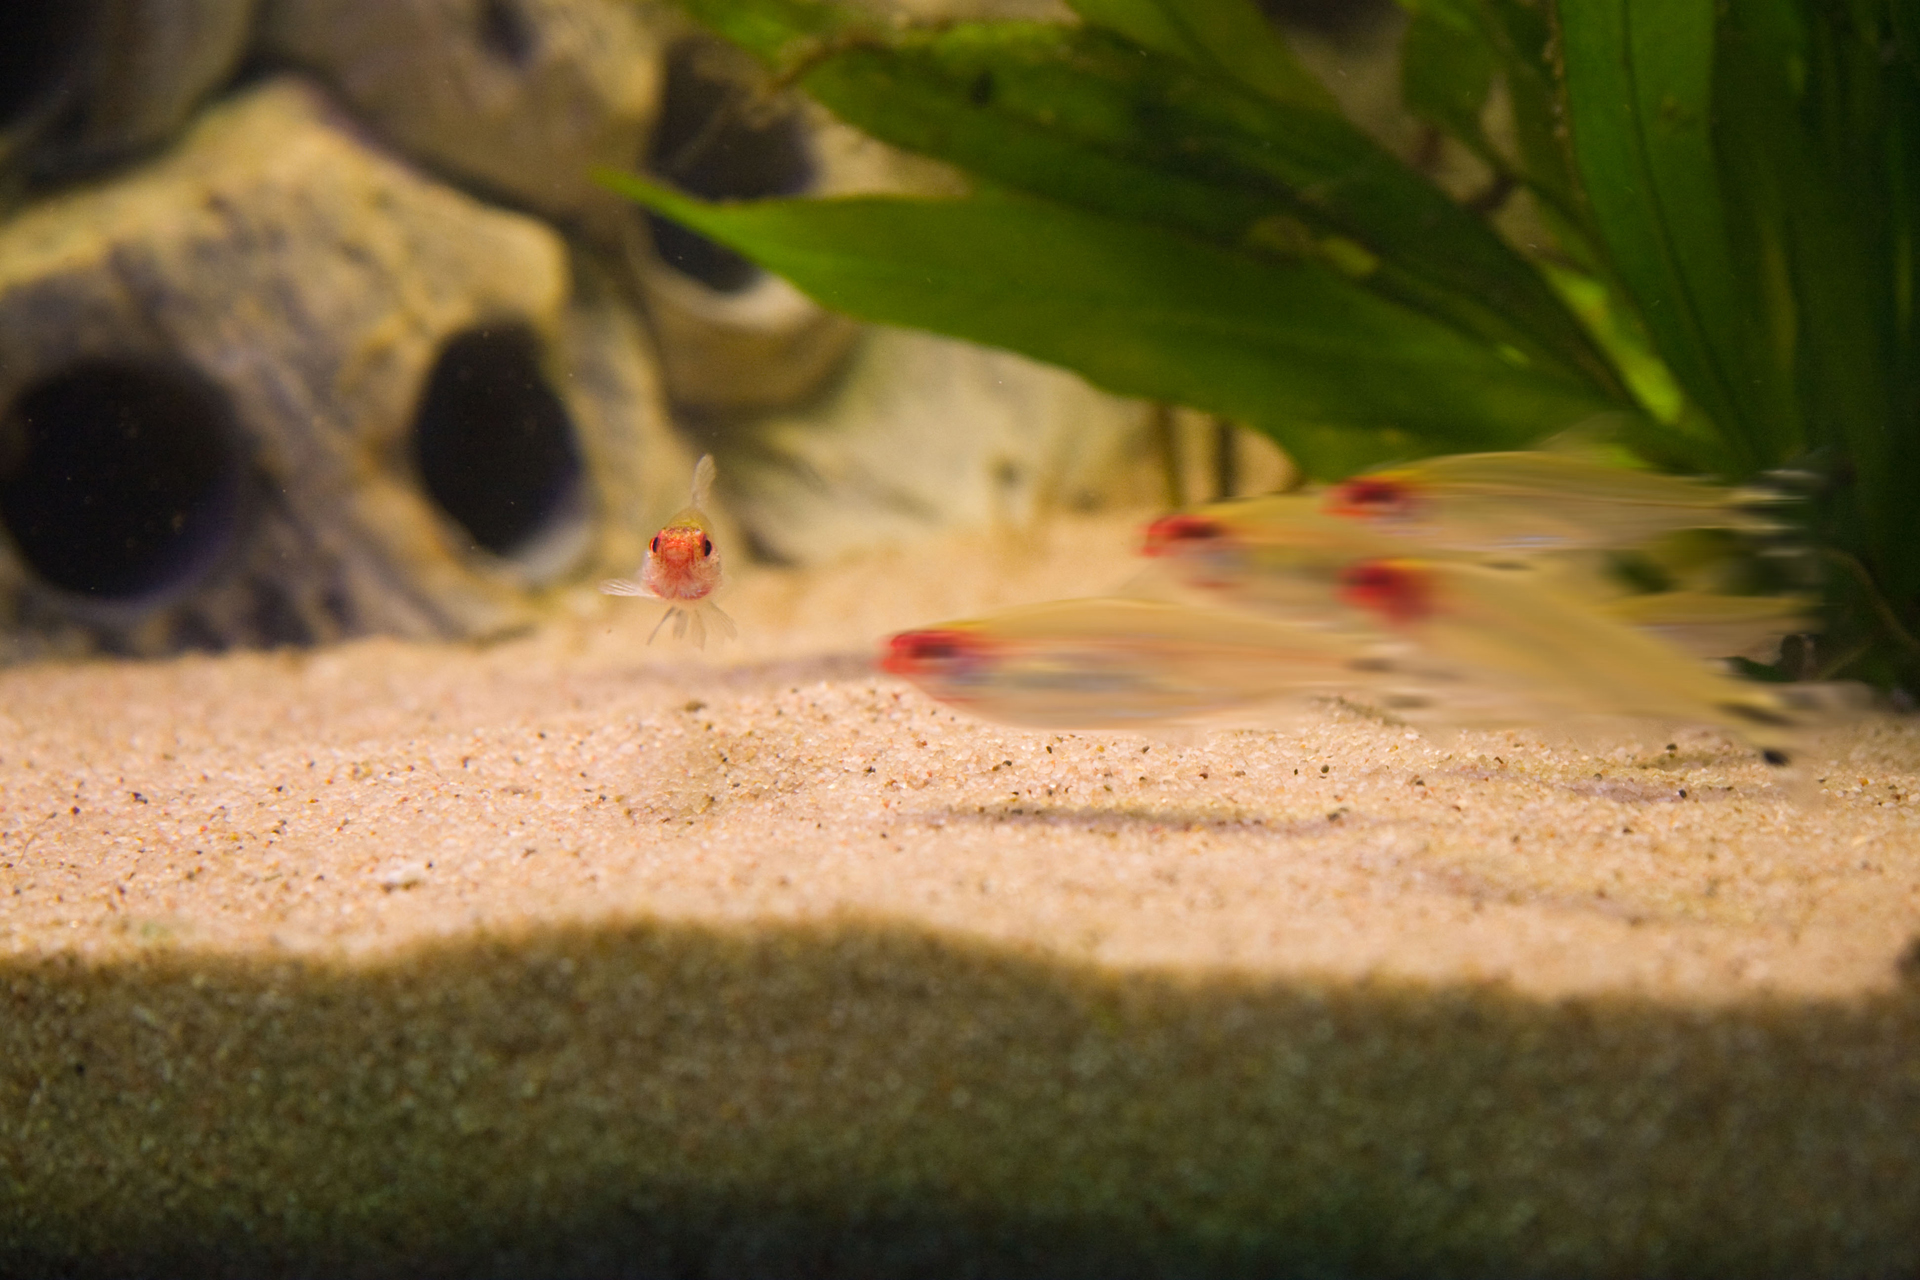 Aquarium fotografie voorbeeld foto: Bewegingsonscherpte door snel bewegende onderwerpen.